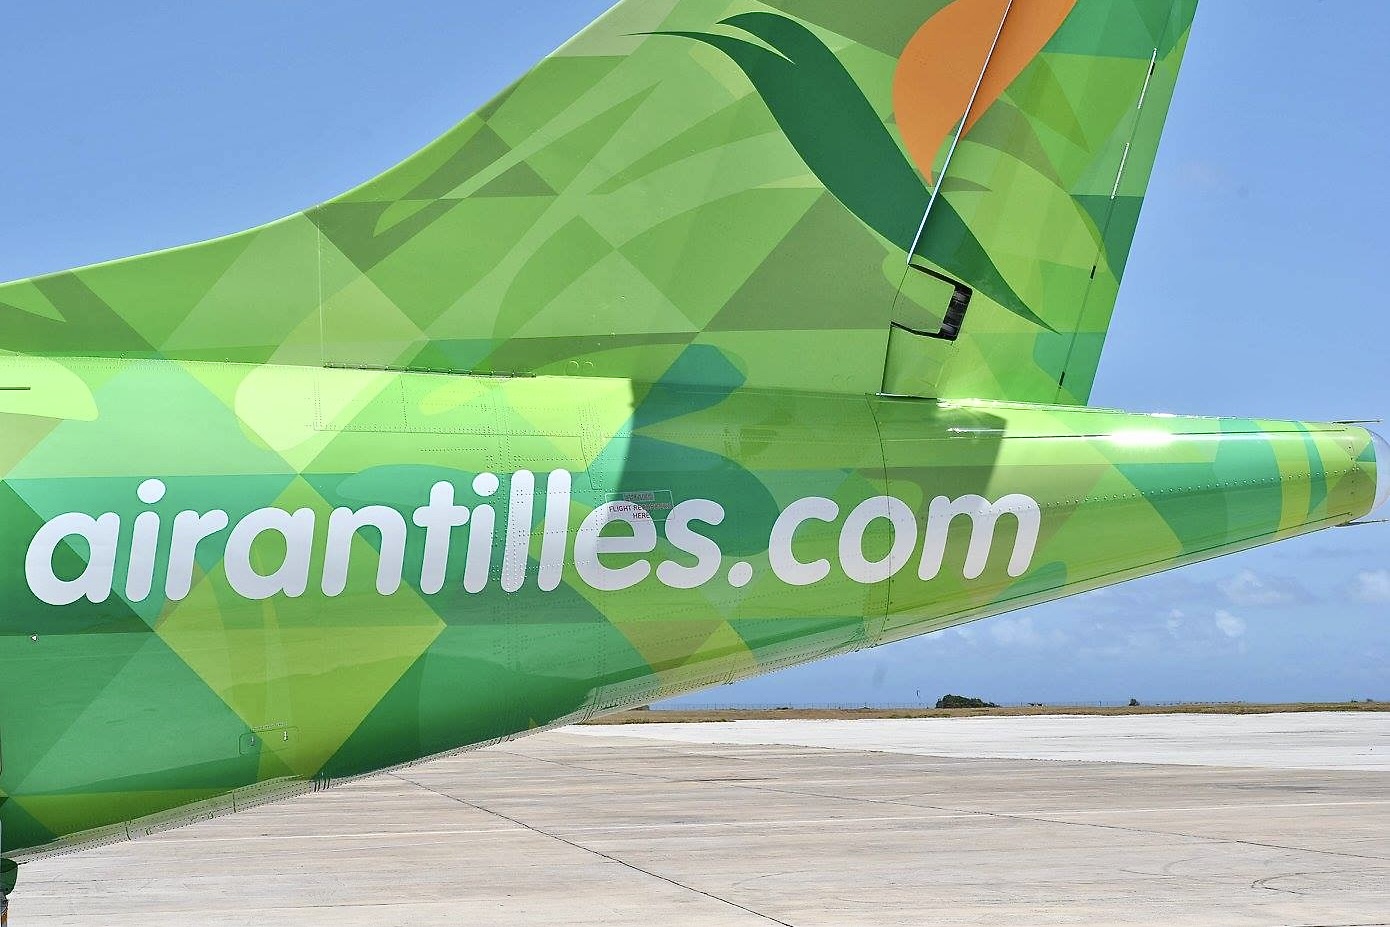 Air Antilles retoma suas operações